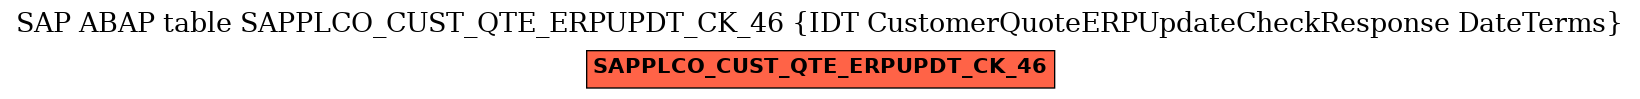 E-R Diagram for table SAPPLCO_CUST_QTE_ERPUPDT_CK_46 (IDT CustomerQuoteERPUpdateCheckResponse DateTerms)